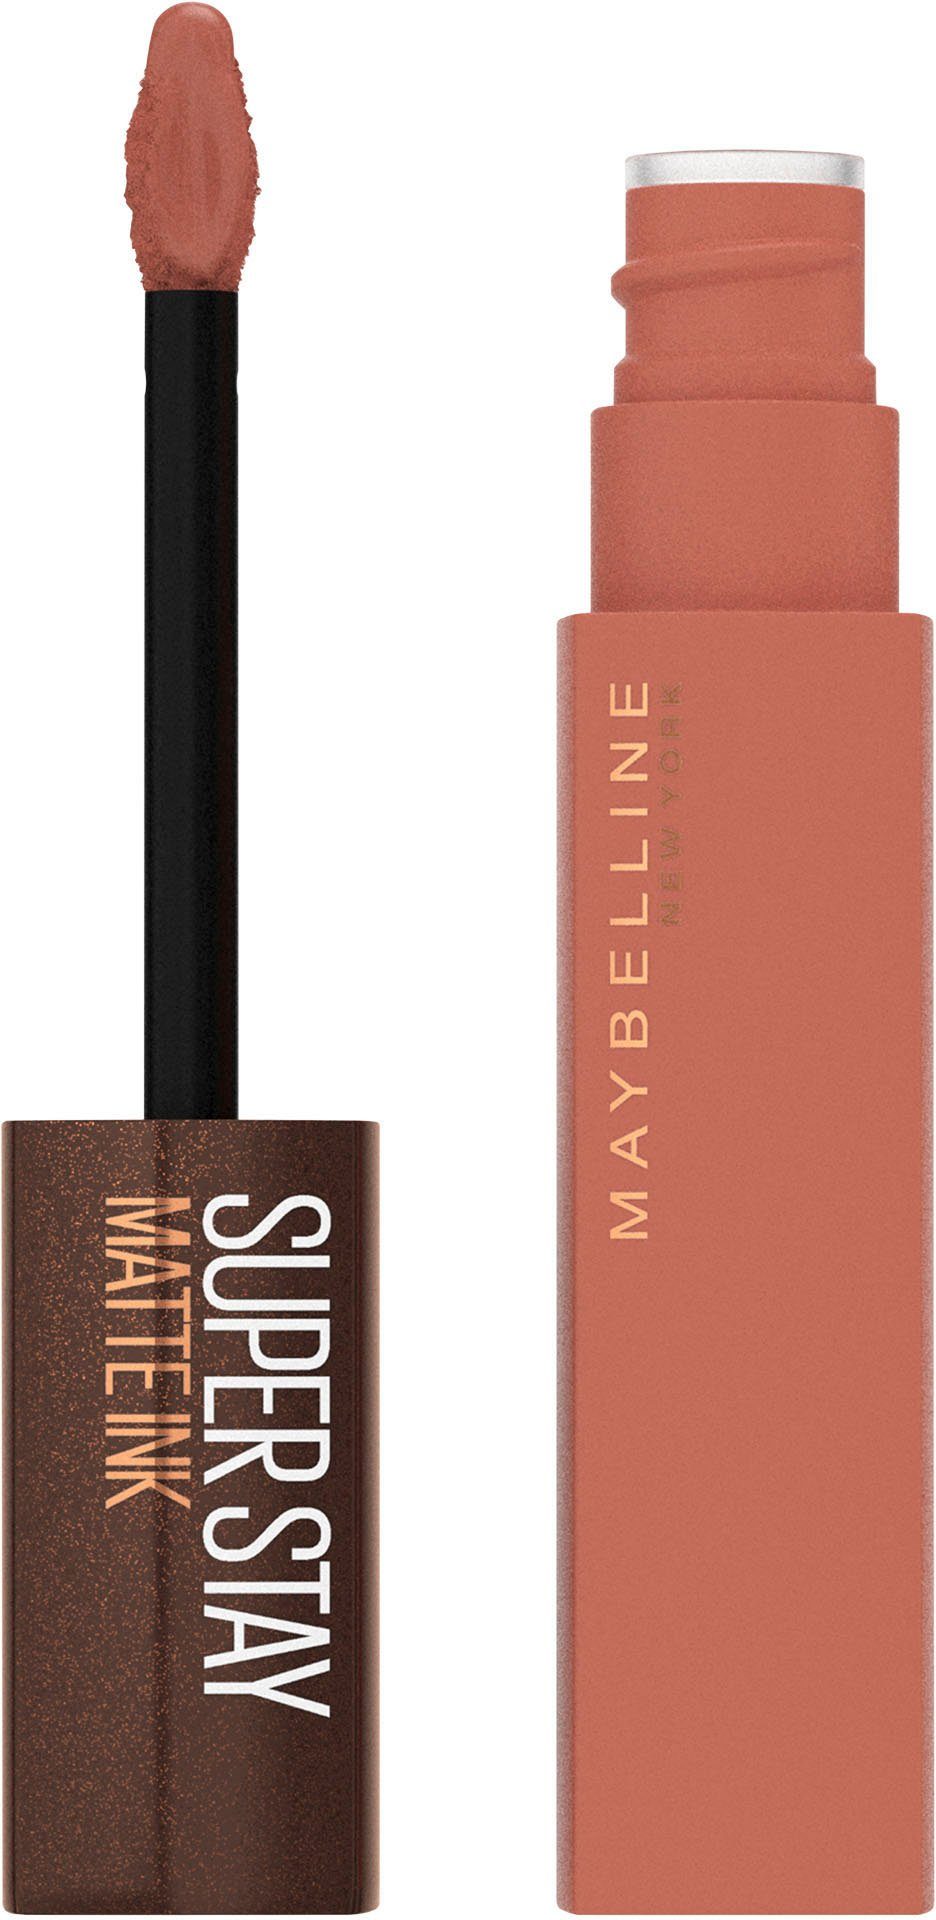 MAYBELLINE NEW YORK Lippenstift Super Stay Matte Ink